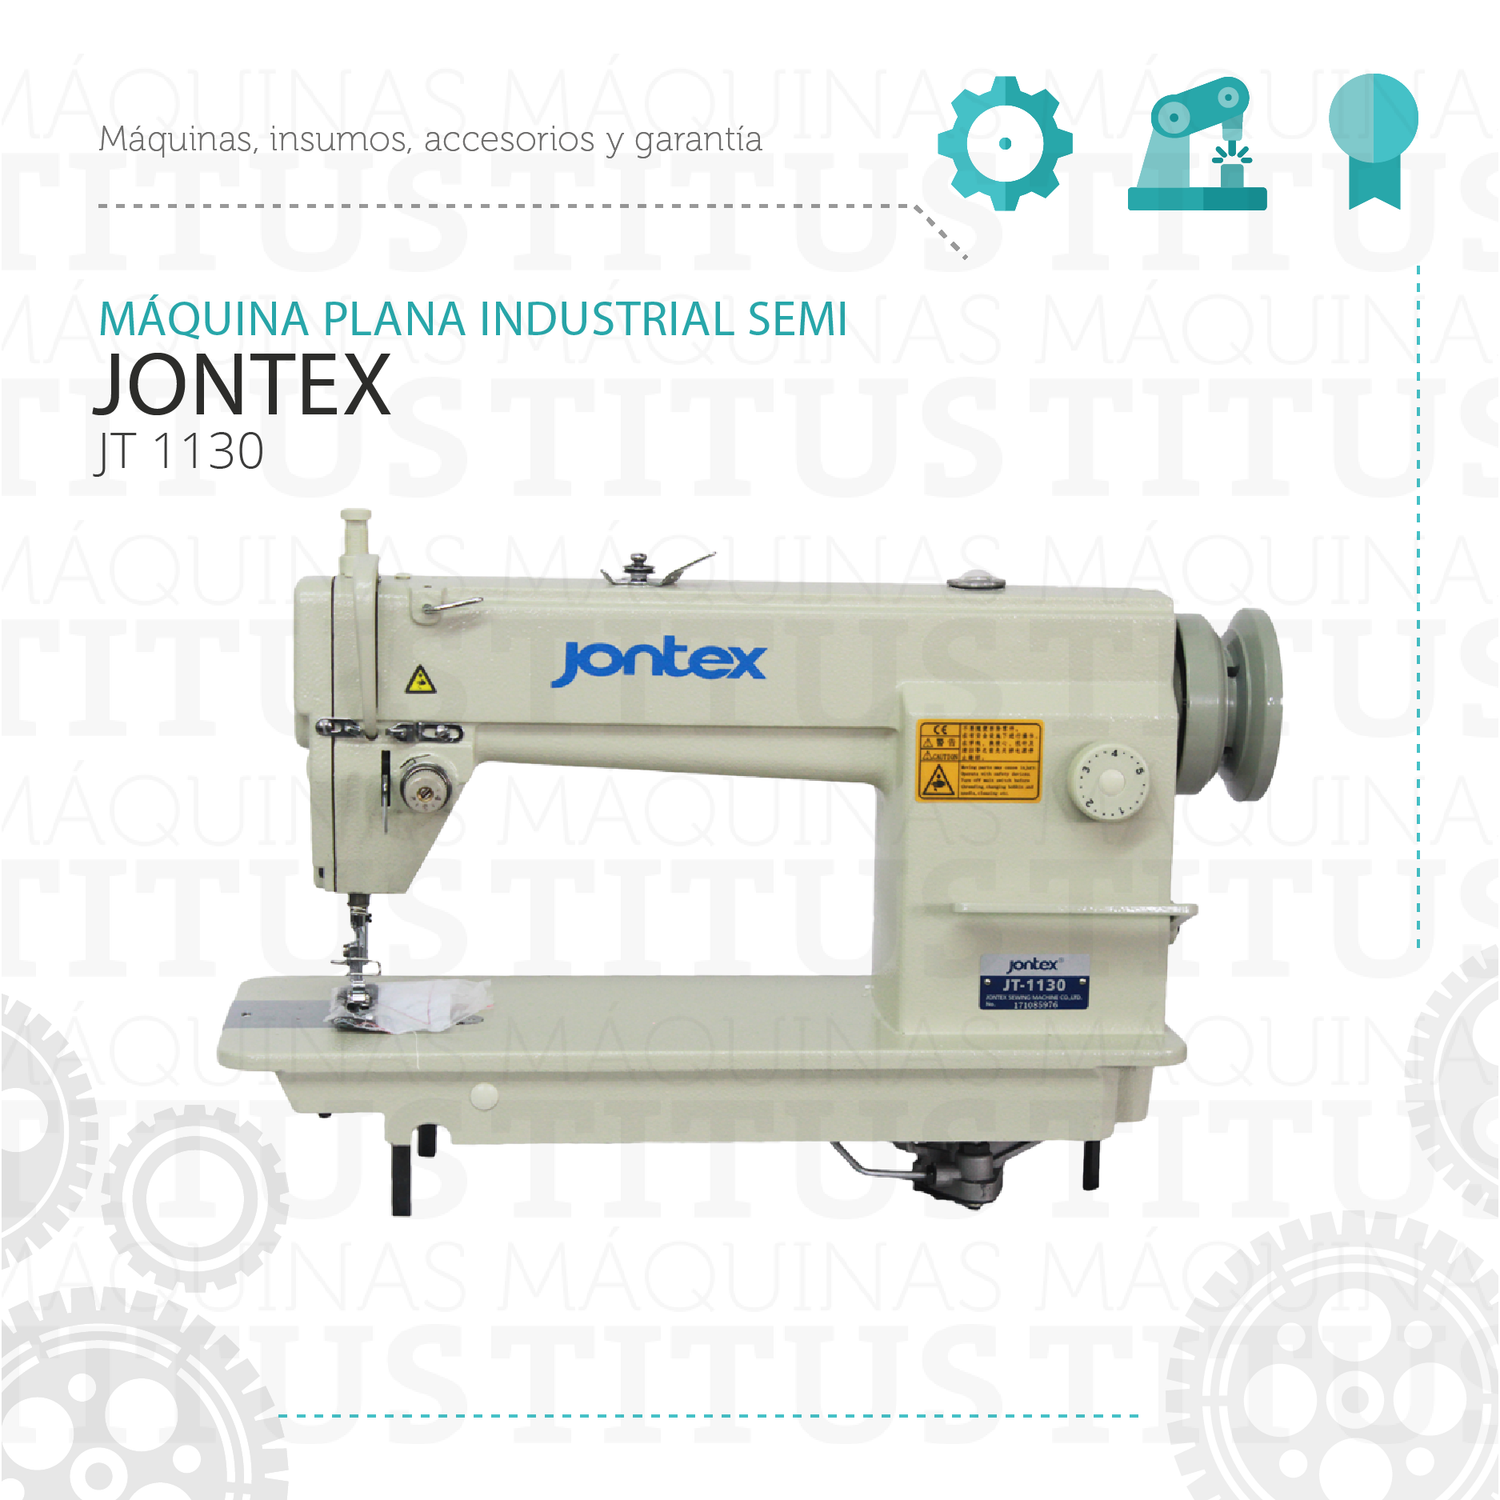 Plana Industrial Jontex JT 1130 Maquina De Coser Semi - Commercio